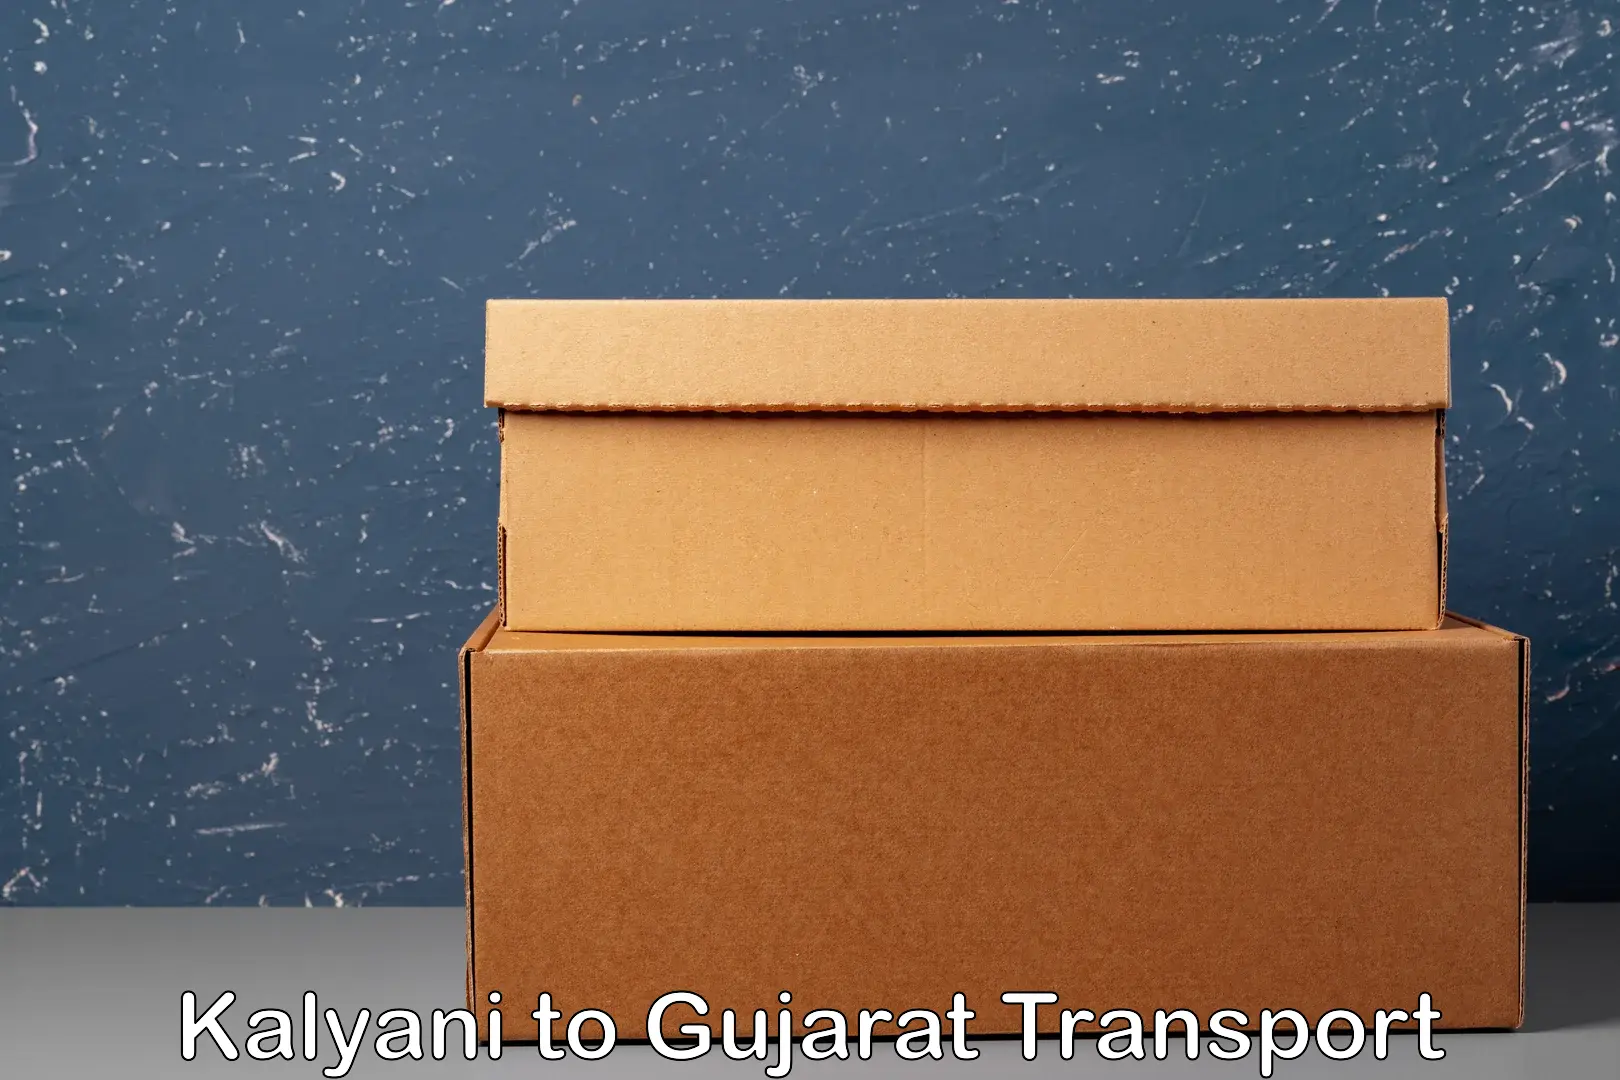 Online transport service Kalyani to Gujarat